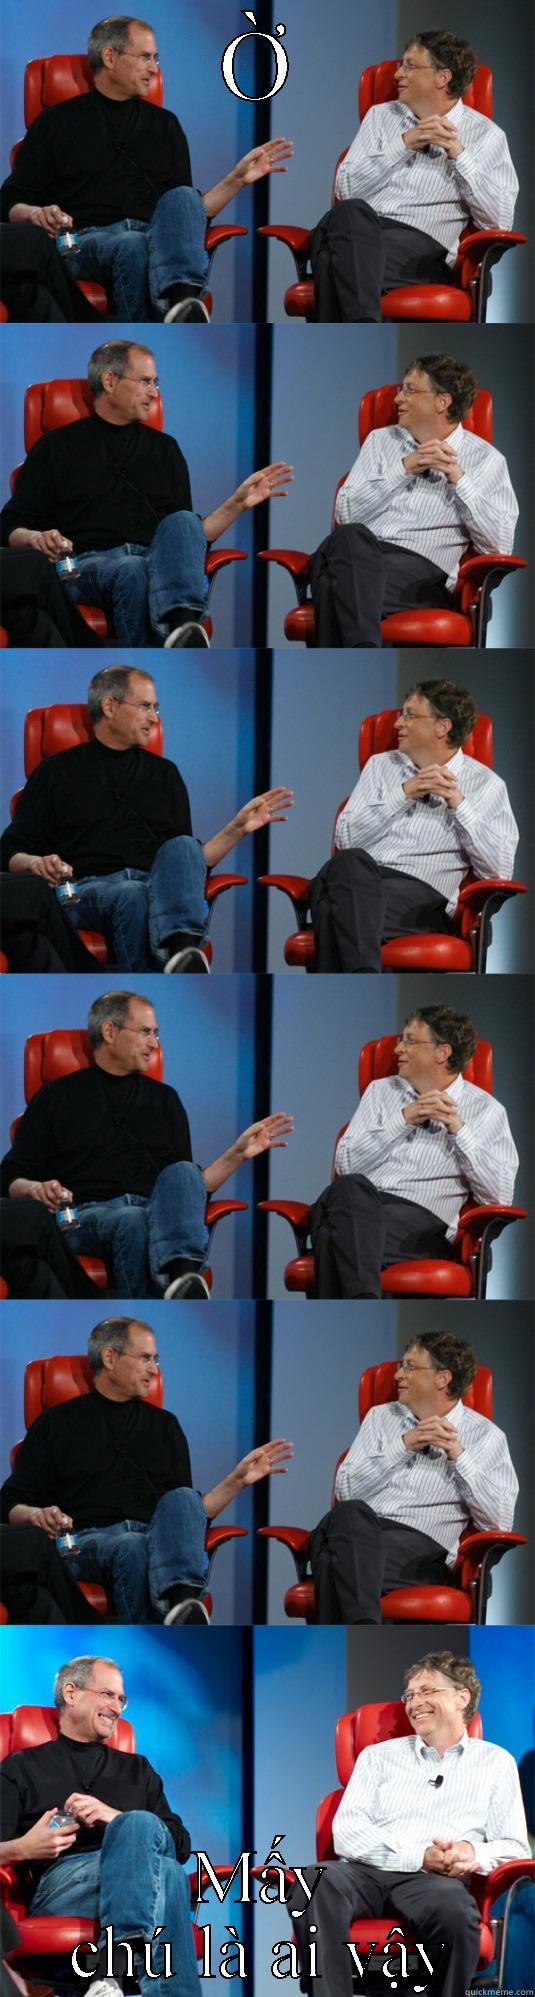 you don't say - Ờ MẤY CHÚ LÀ AI VẬY Steve Jobs vs Bill Gates